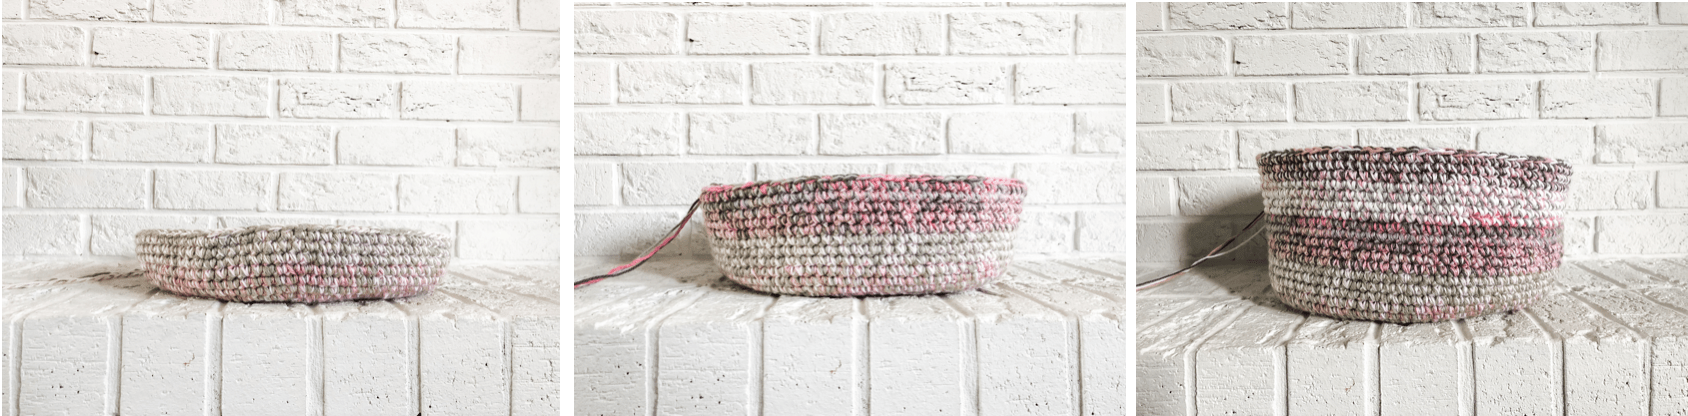 crochet basket pattern